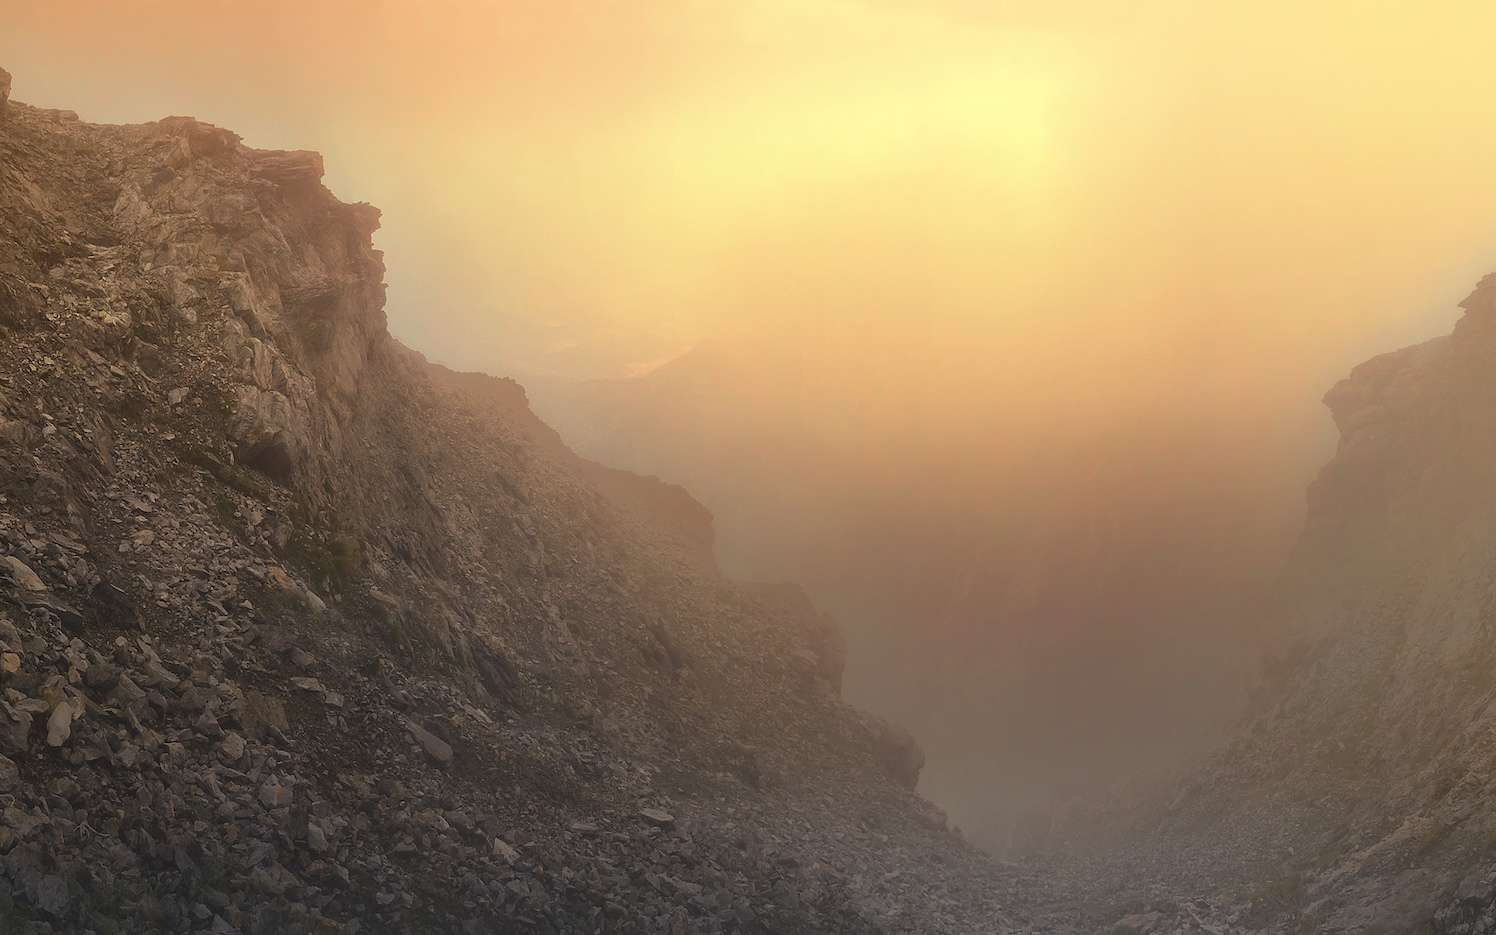 Paysage sur le mont Olympe en Grèce qui rappelle un peu celui de Mars. © Paschalis Bartzoudis, Adobe Stock